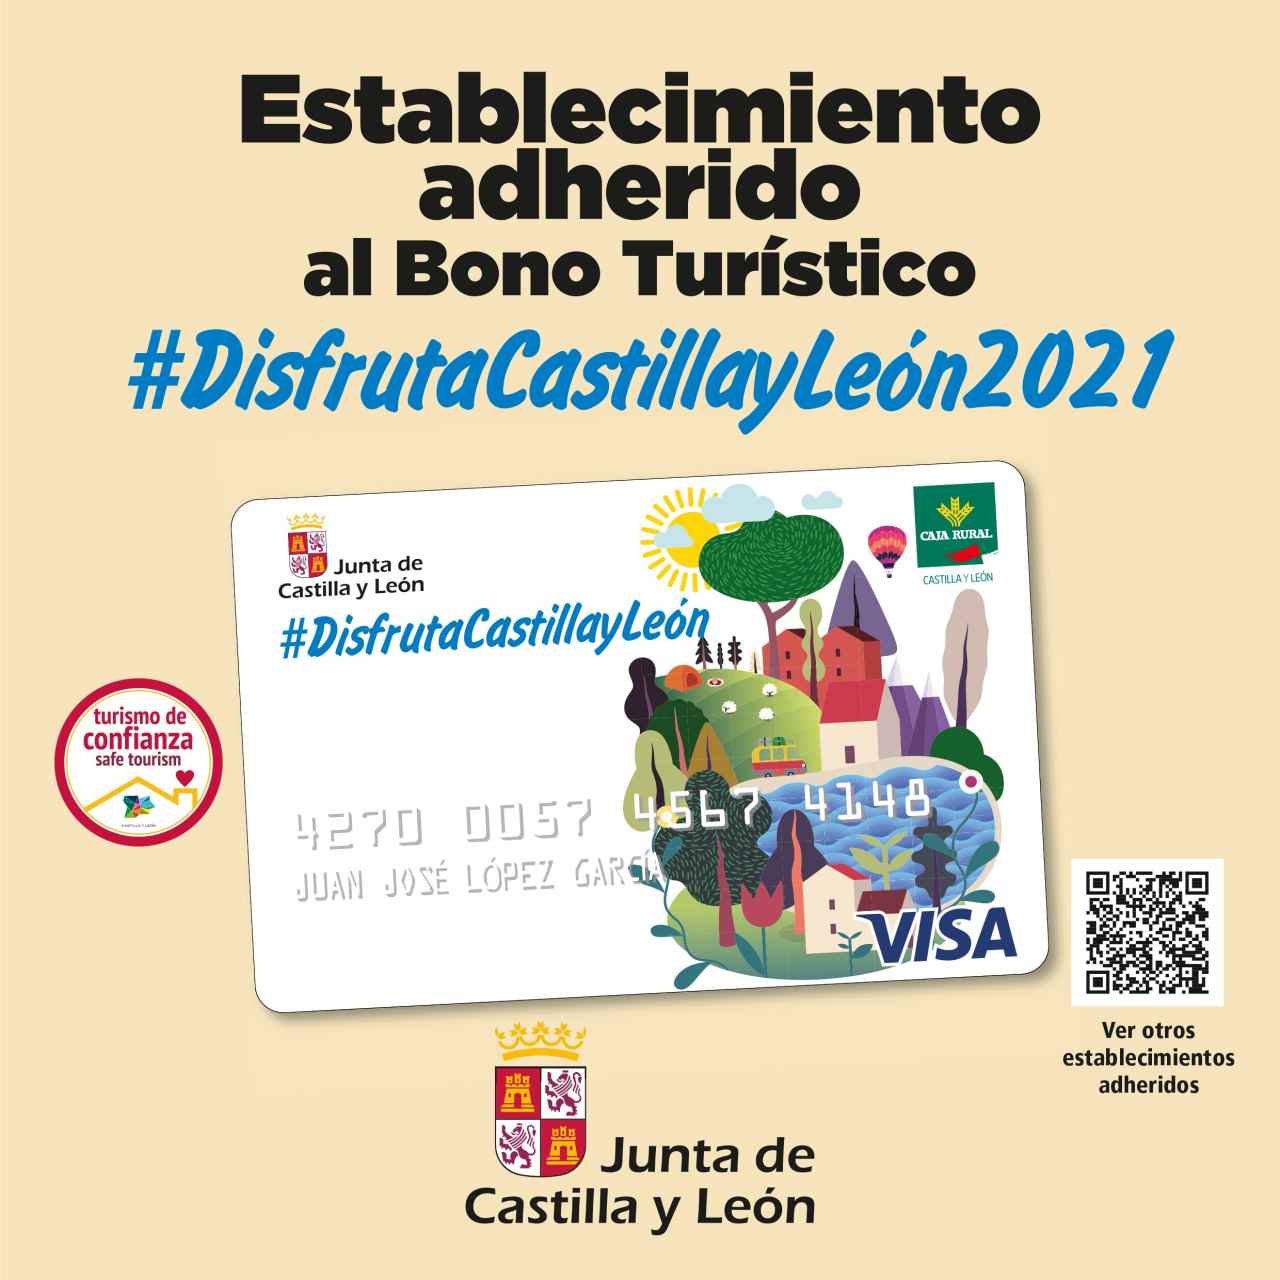 Cartel de la campaña de Bonos Turísticos de Castilla y León